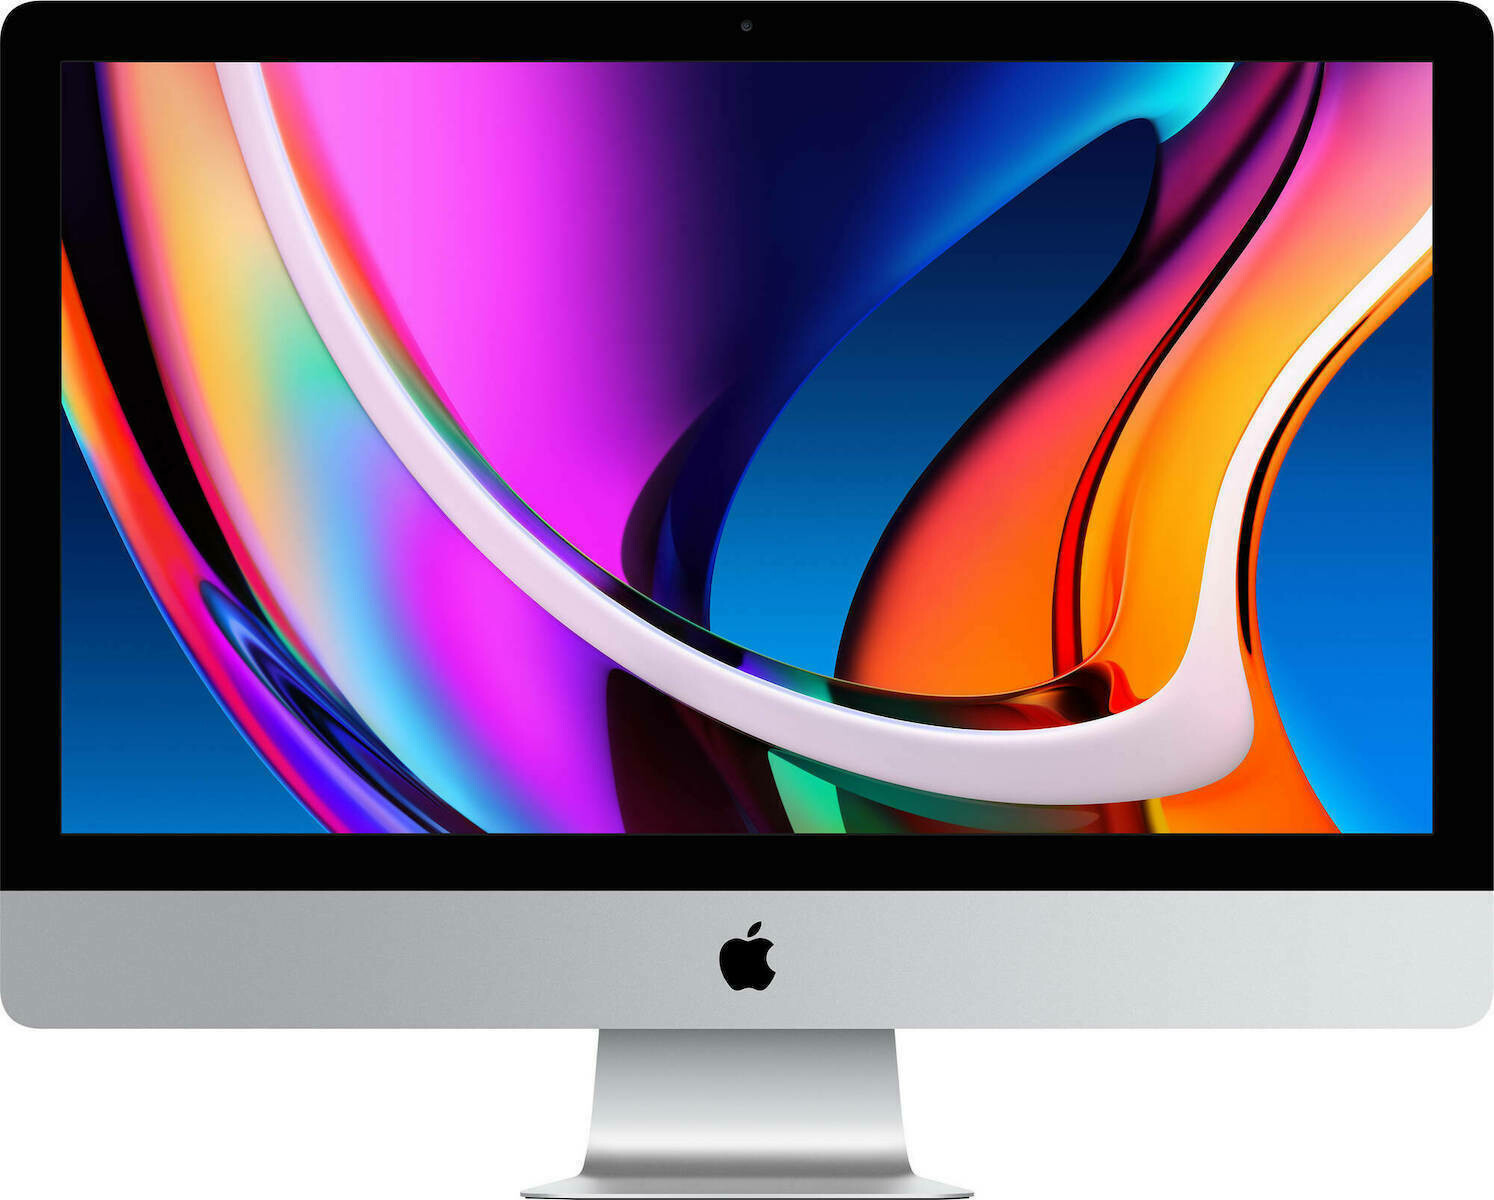 iMac 27" RETINA 5K(MID 2015) 3.3Ghz 4CoreI5 16GB Mem 256SSD/1Tb HDD  Fusiondrive